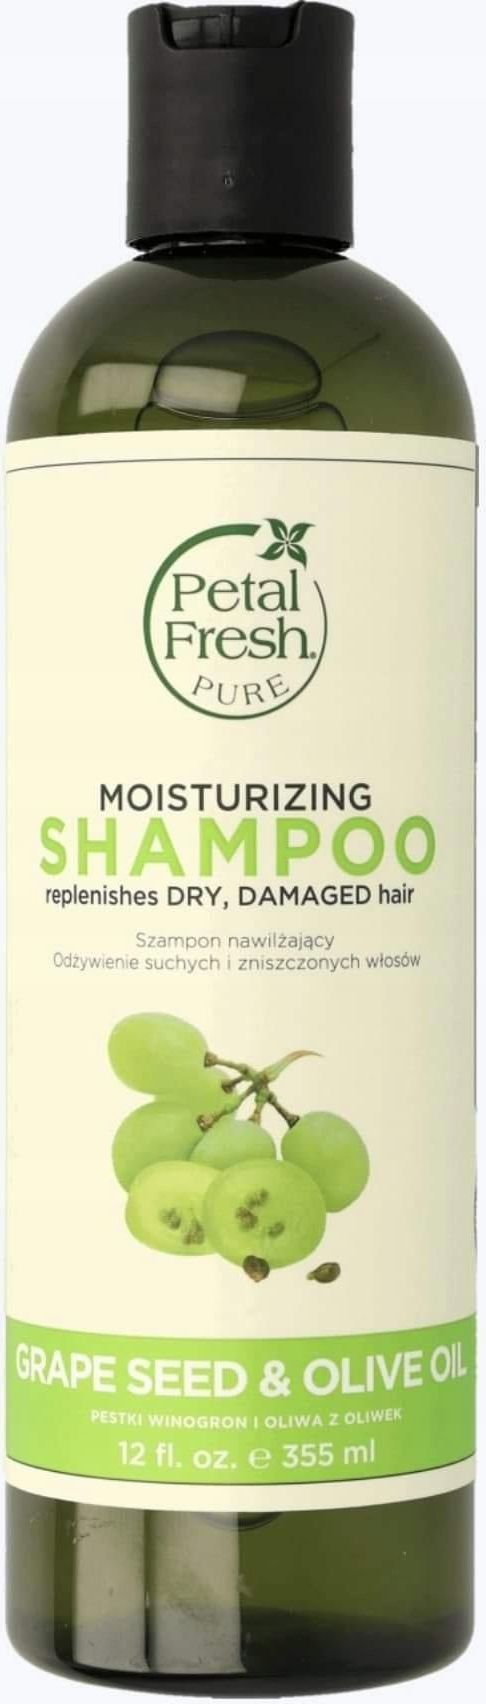 petal fresh nawilżający szampon do włosów pestki winogron